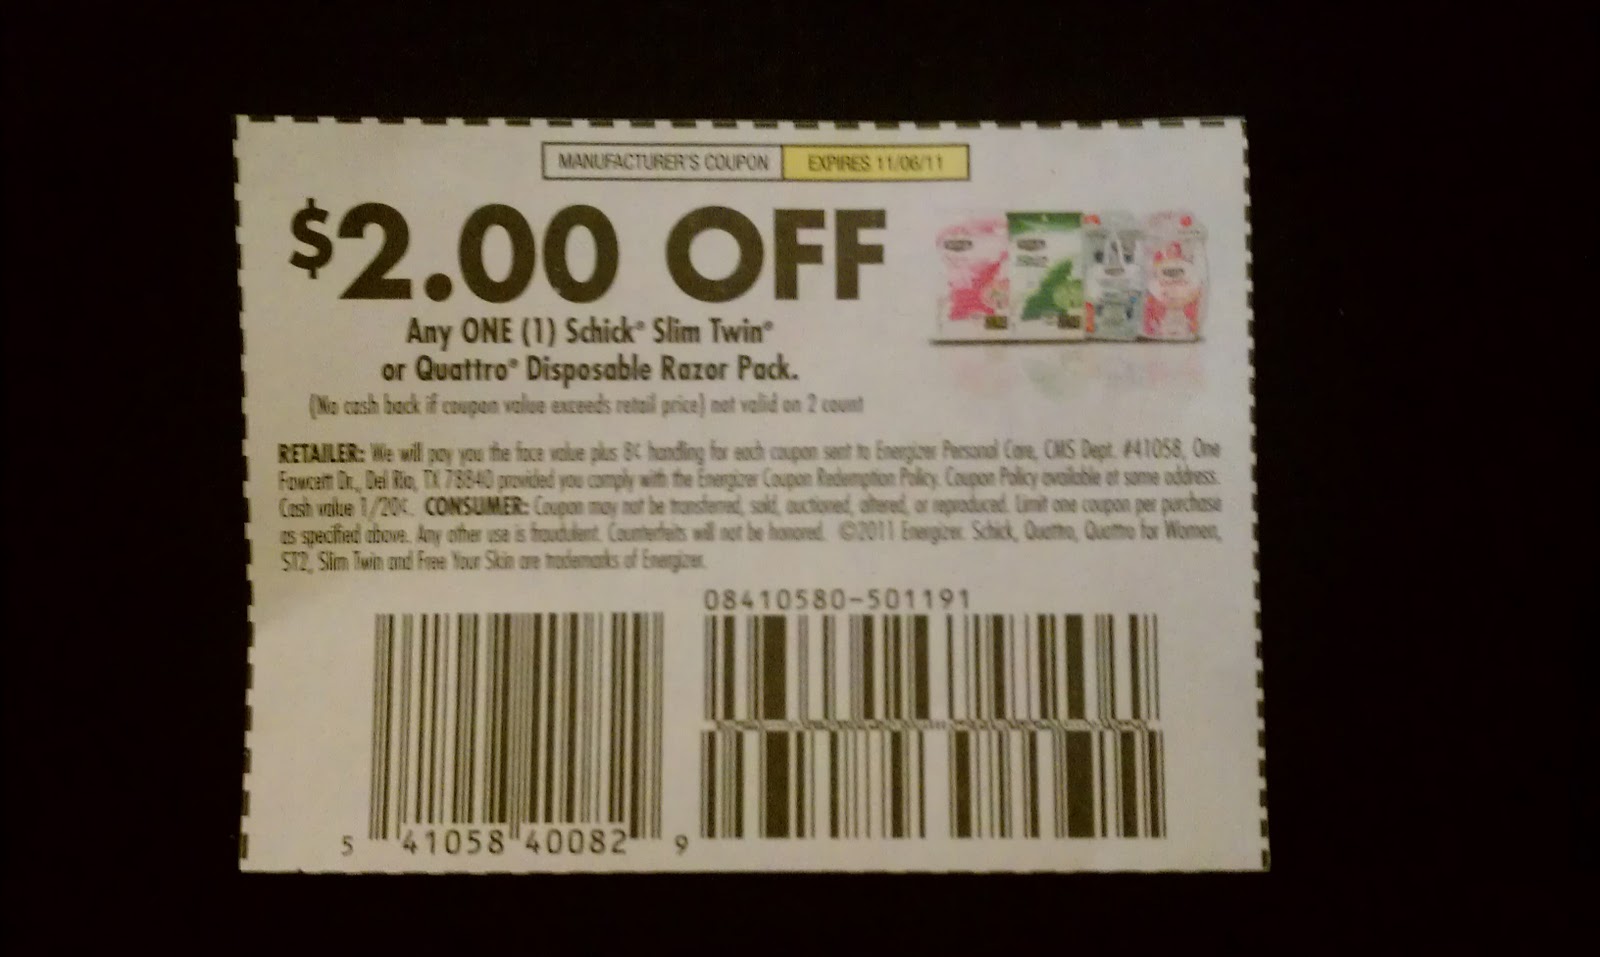 schick razor coupons